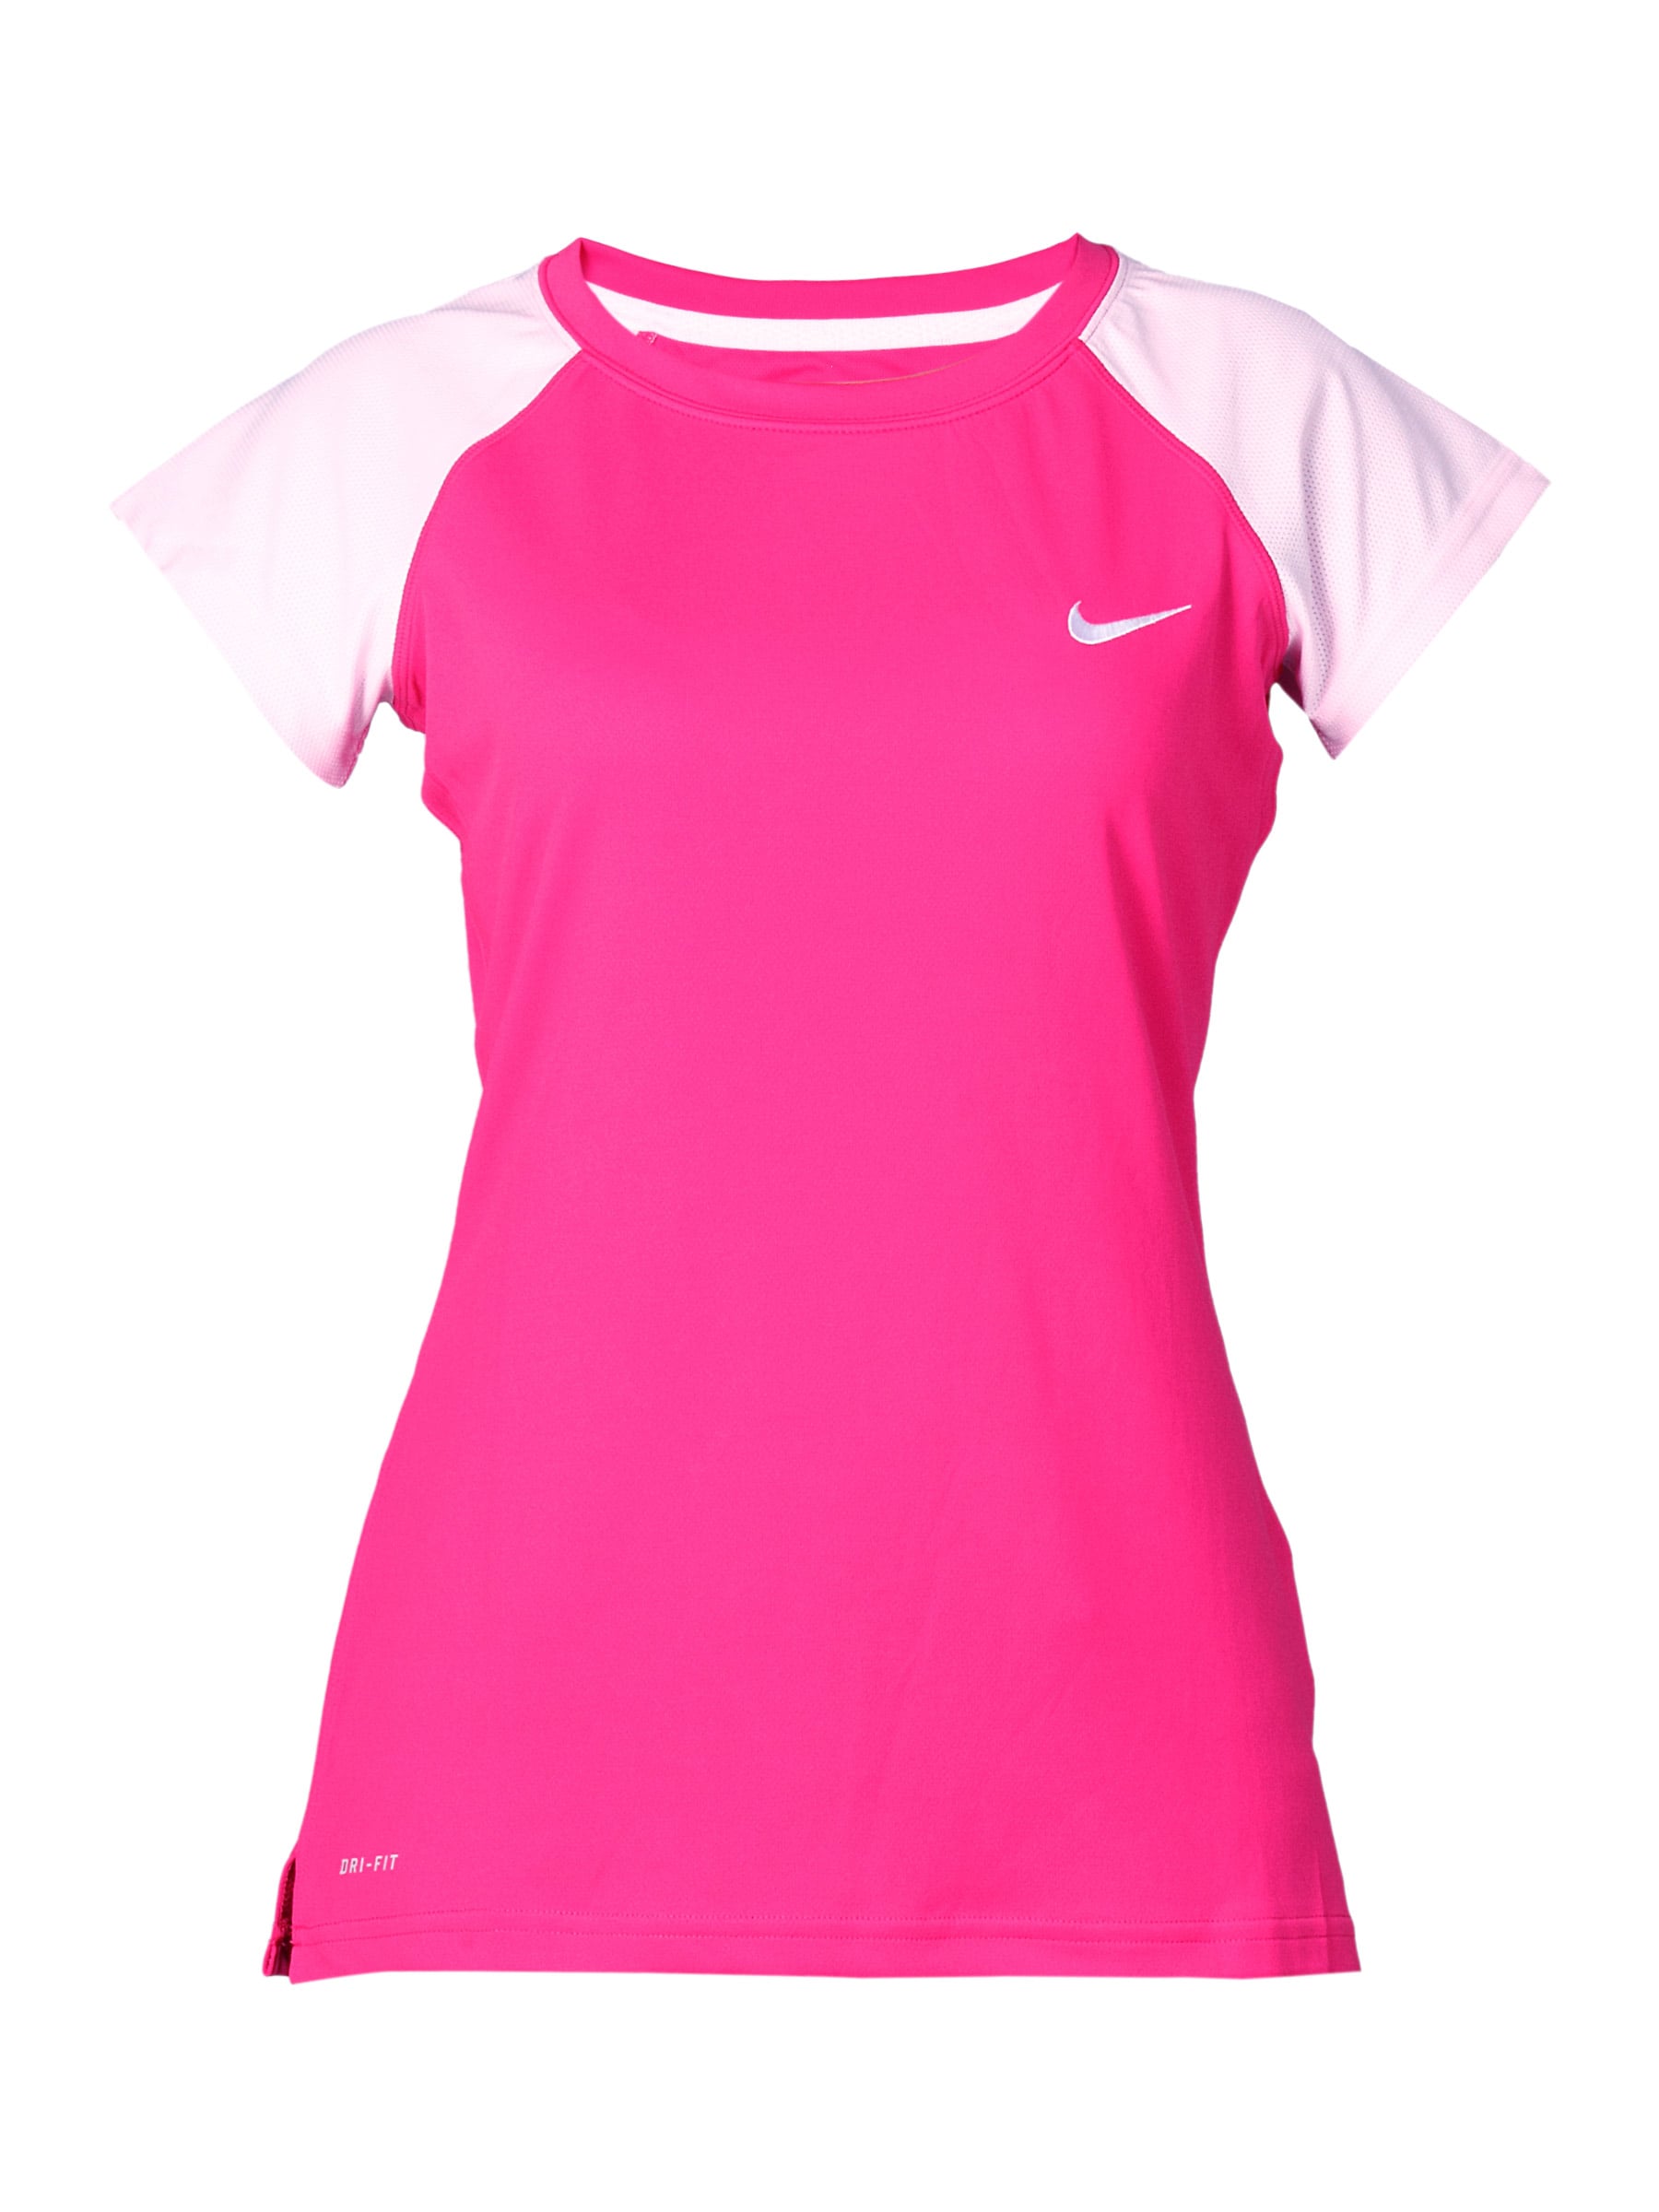 Nike Women's Class Pink T-shirt